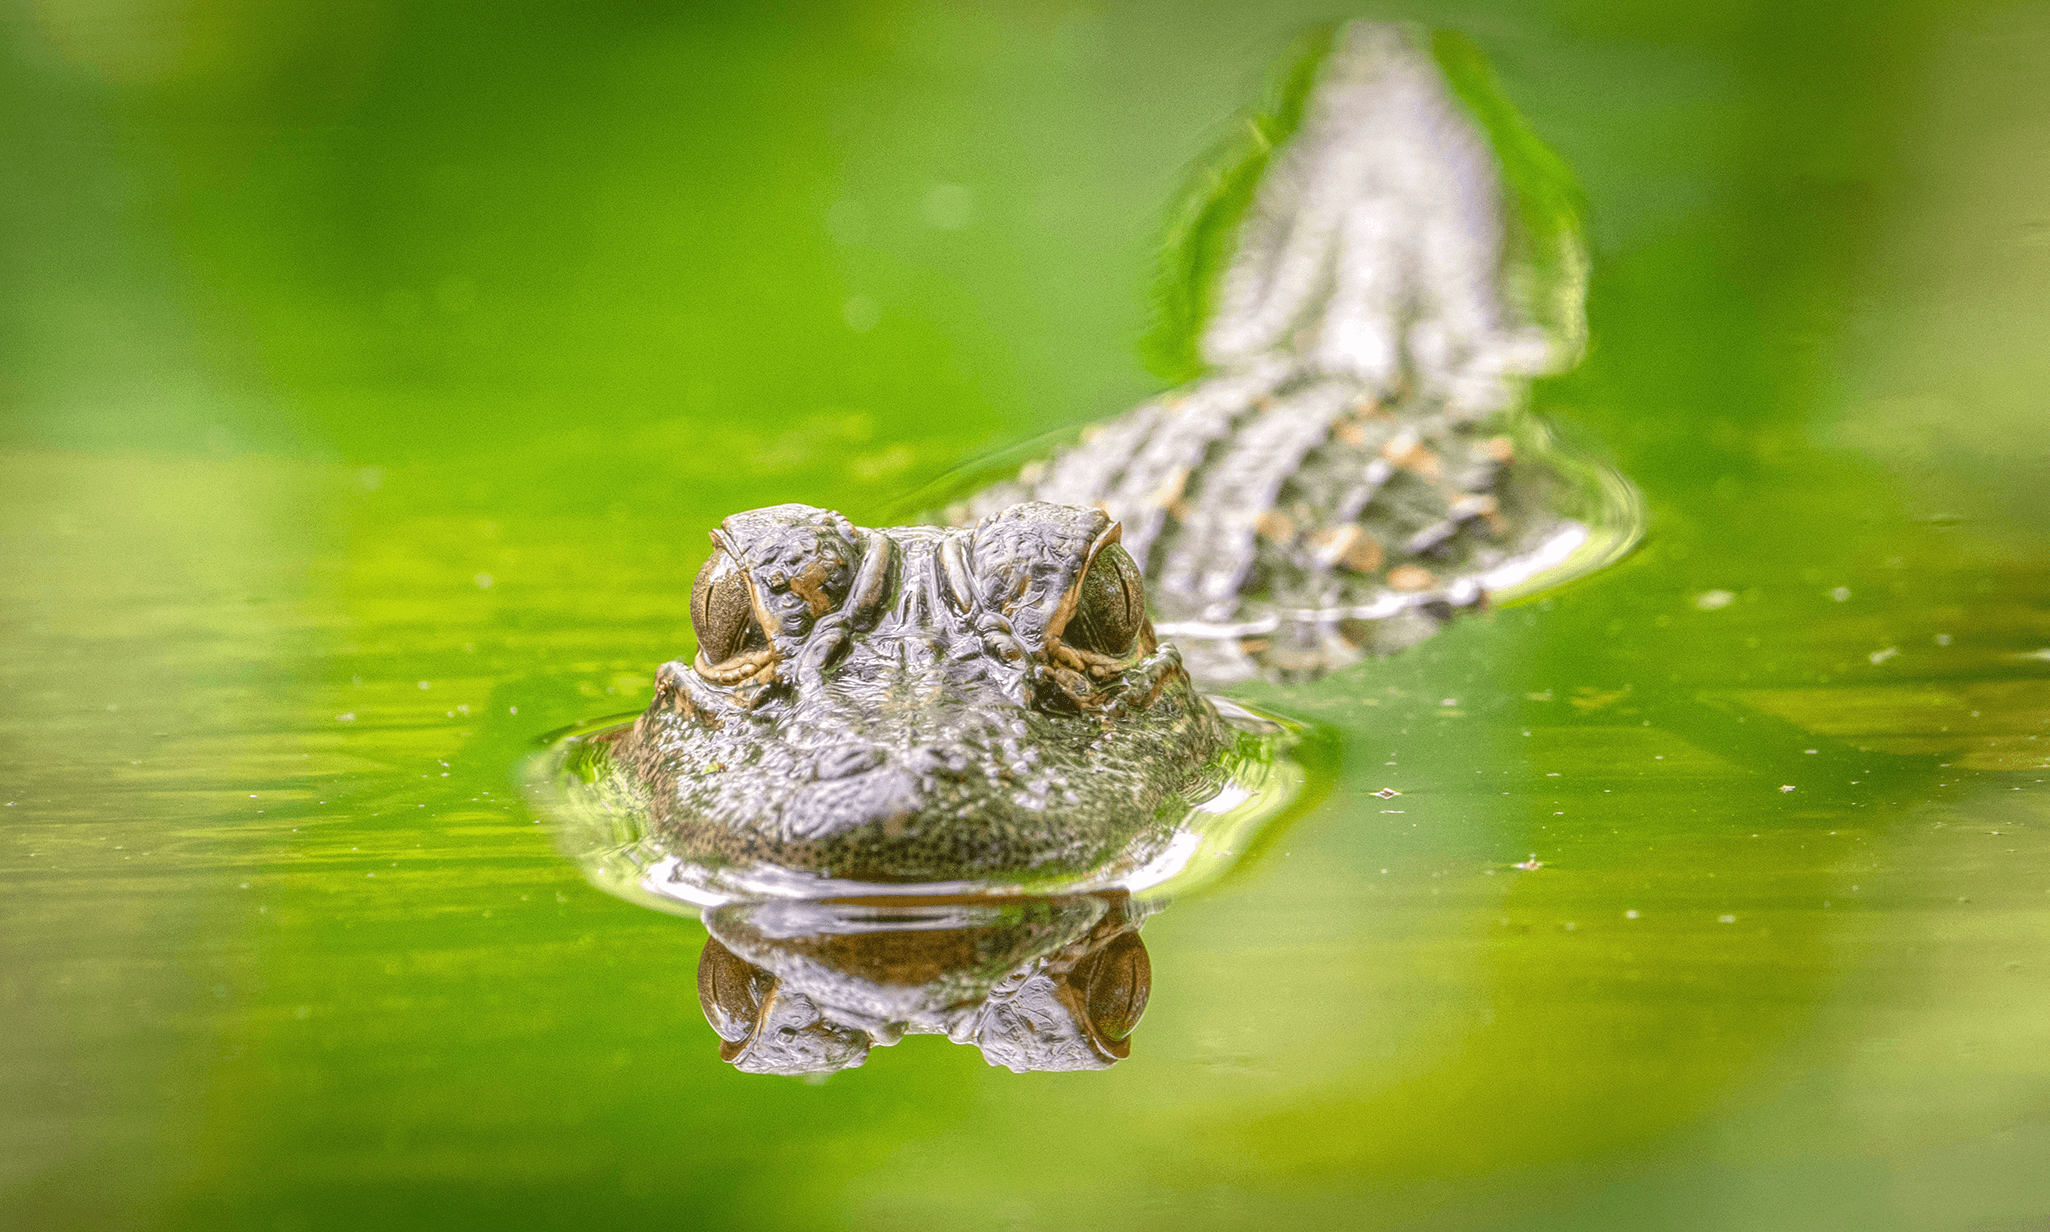 2 – Alligators